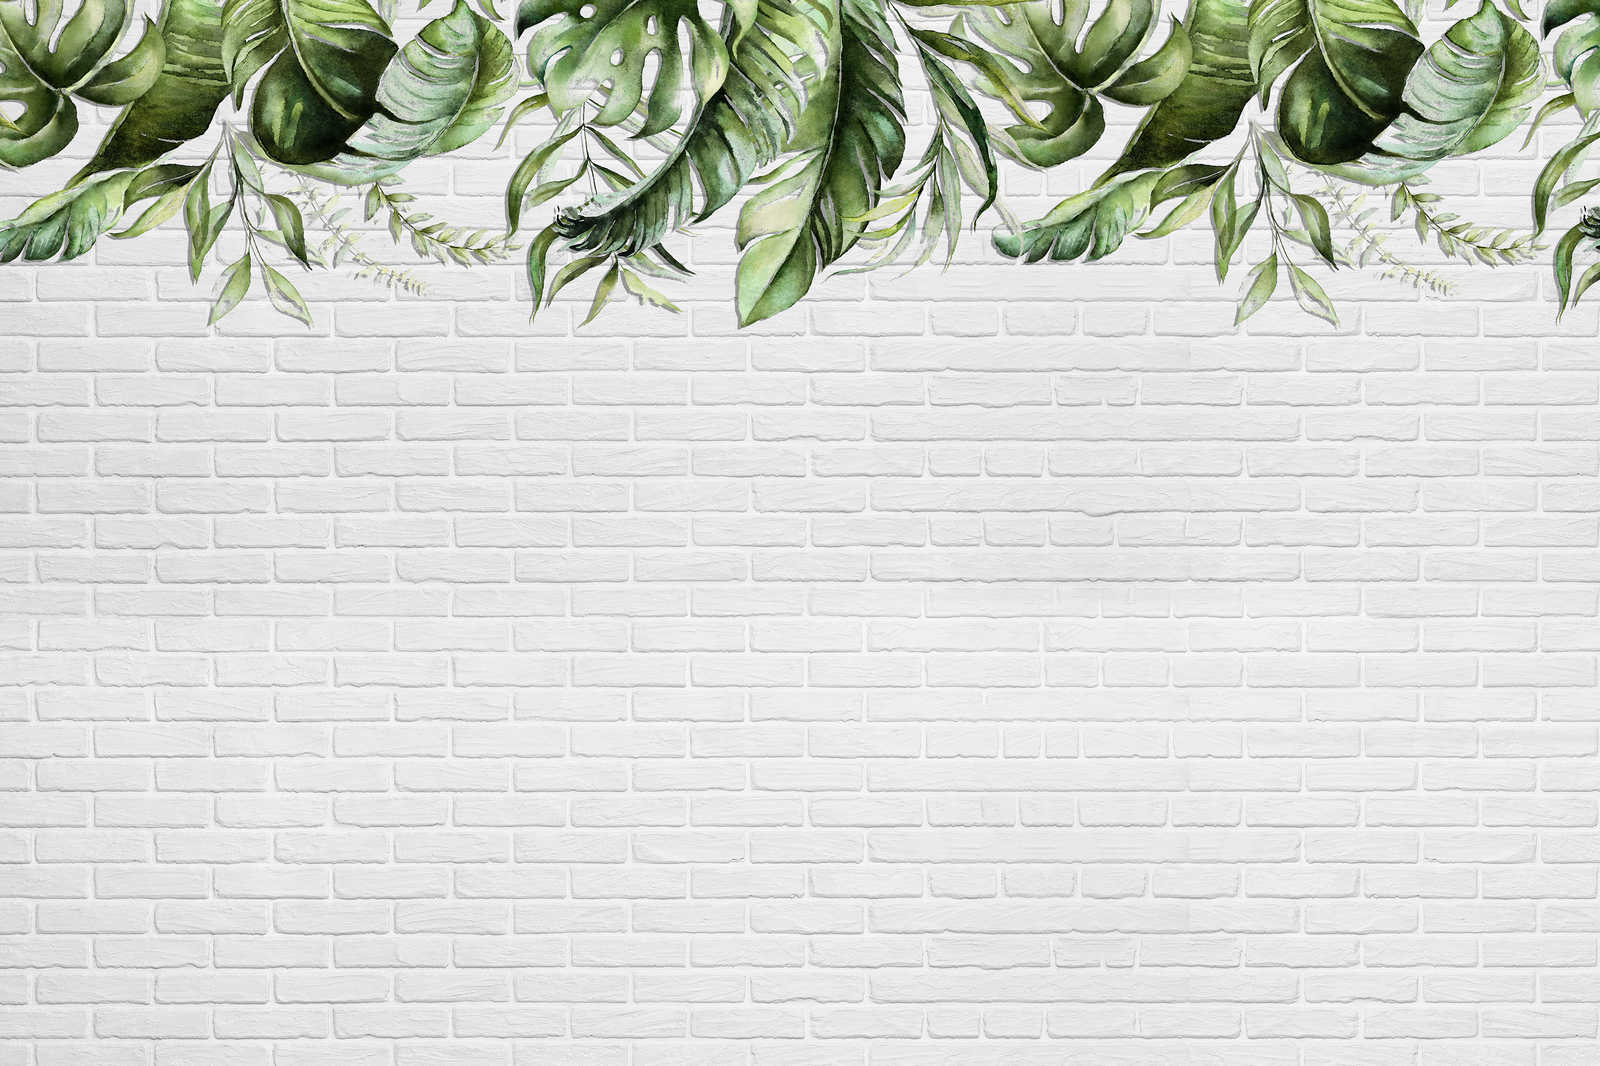             Cuadro en lienzo con pequeños zarcillos de hojas sobre un muro de piedra - 0,90 m x 0,60 m
        